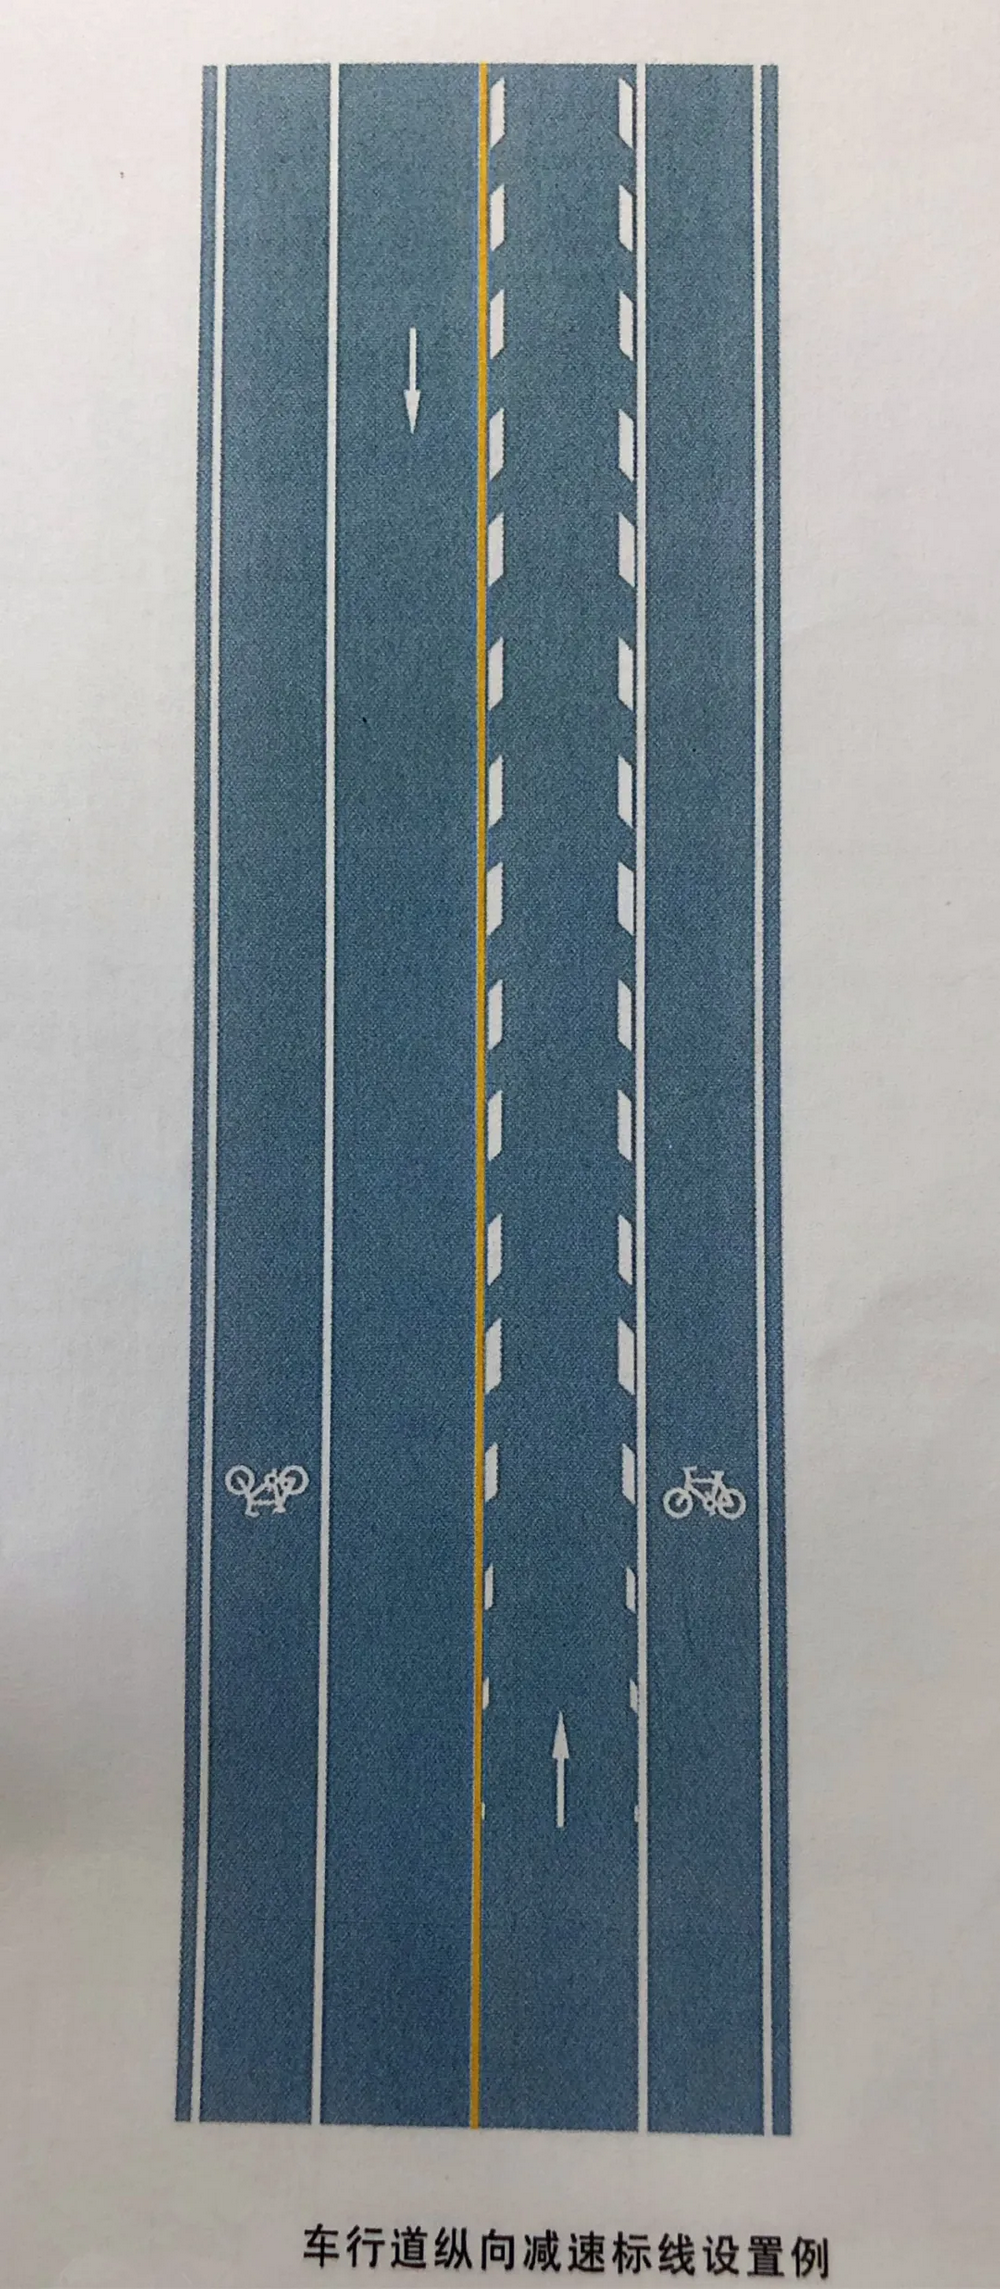 车行道纵向减速标线 车行道纵向减速标线为一组平行于车行道分界线的